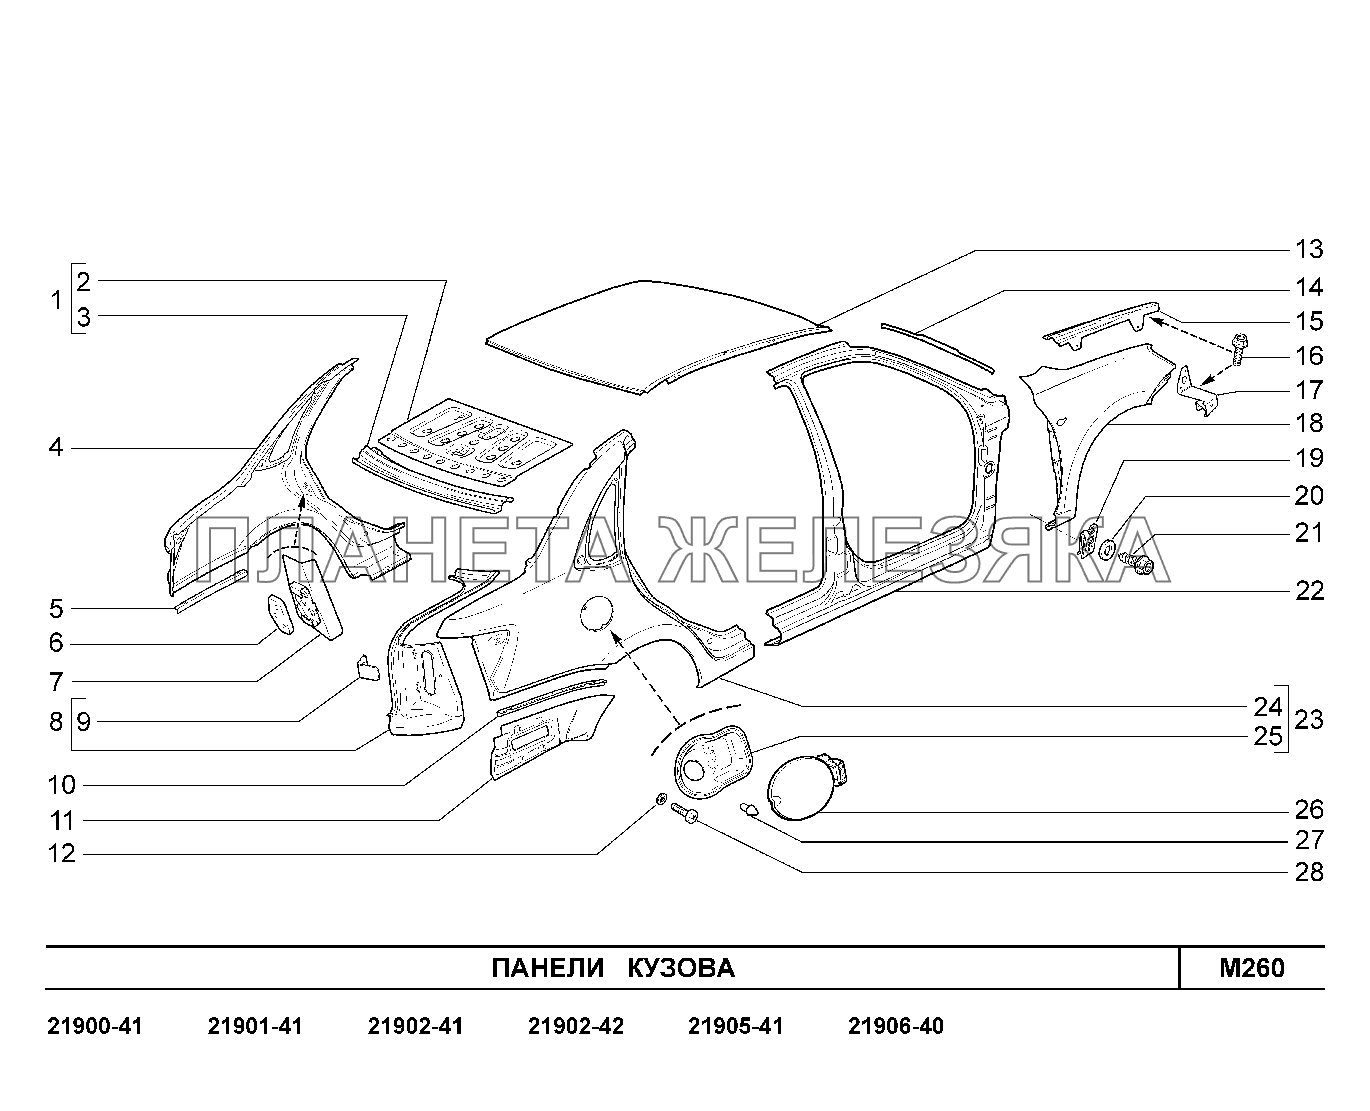 M260. Панели кузова Lada Granta-2190